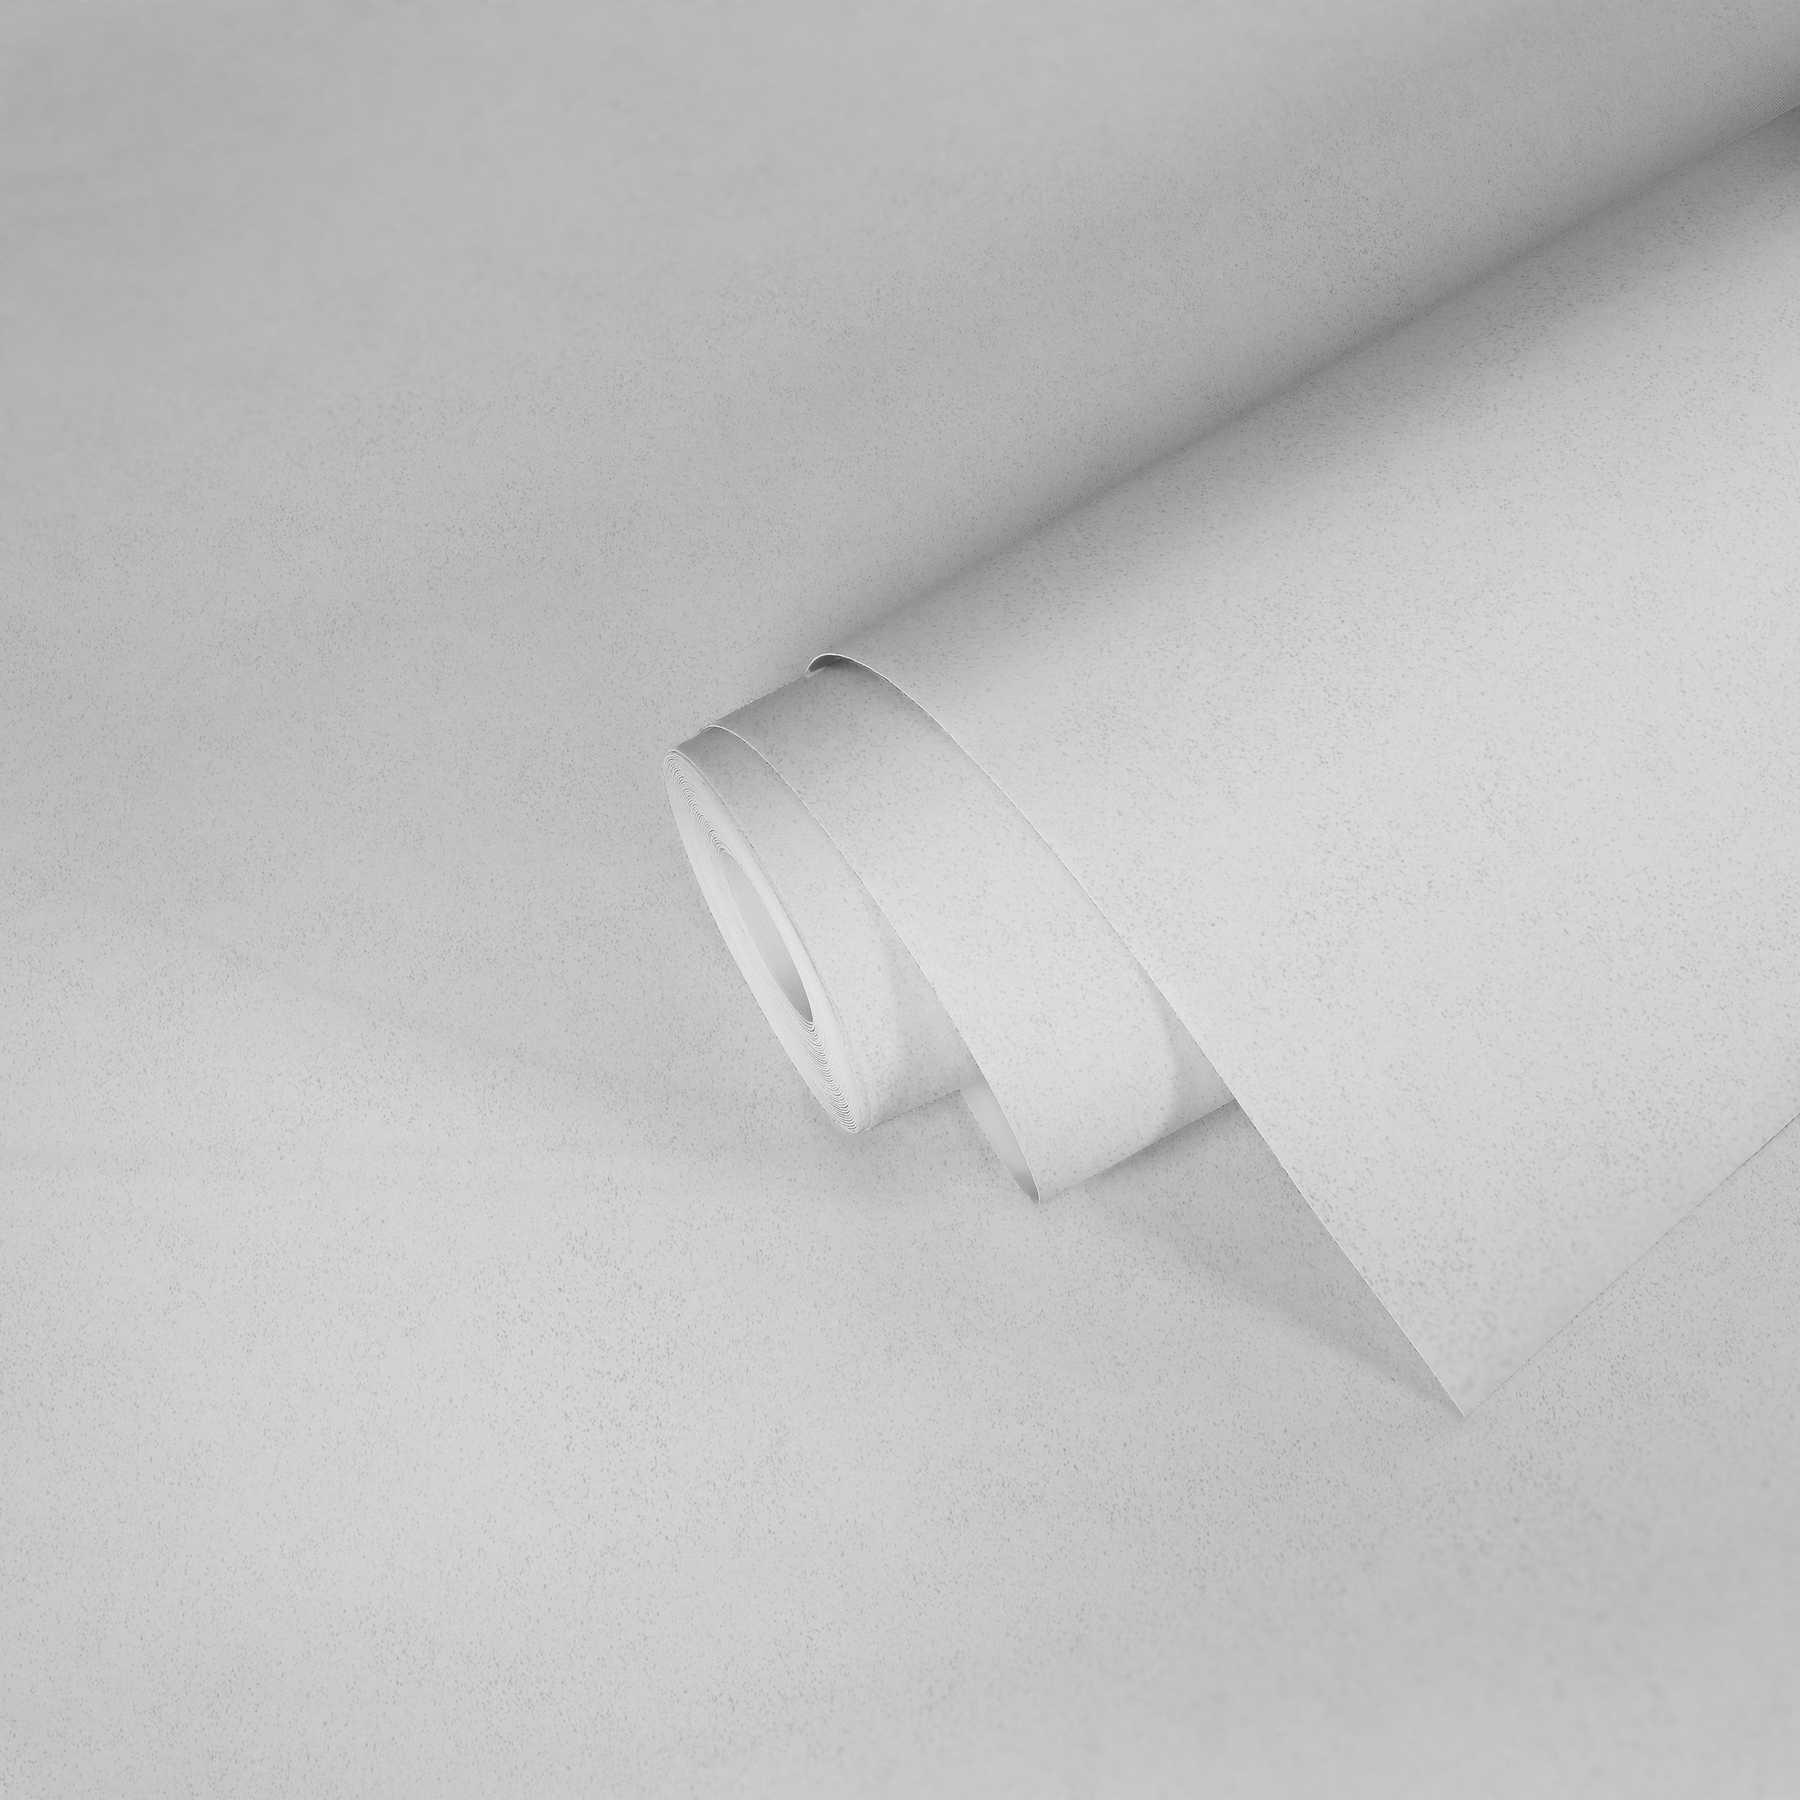             Papier peint uni avec structure de surface finement chiné - blanc
        